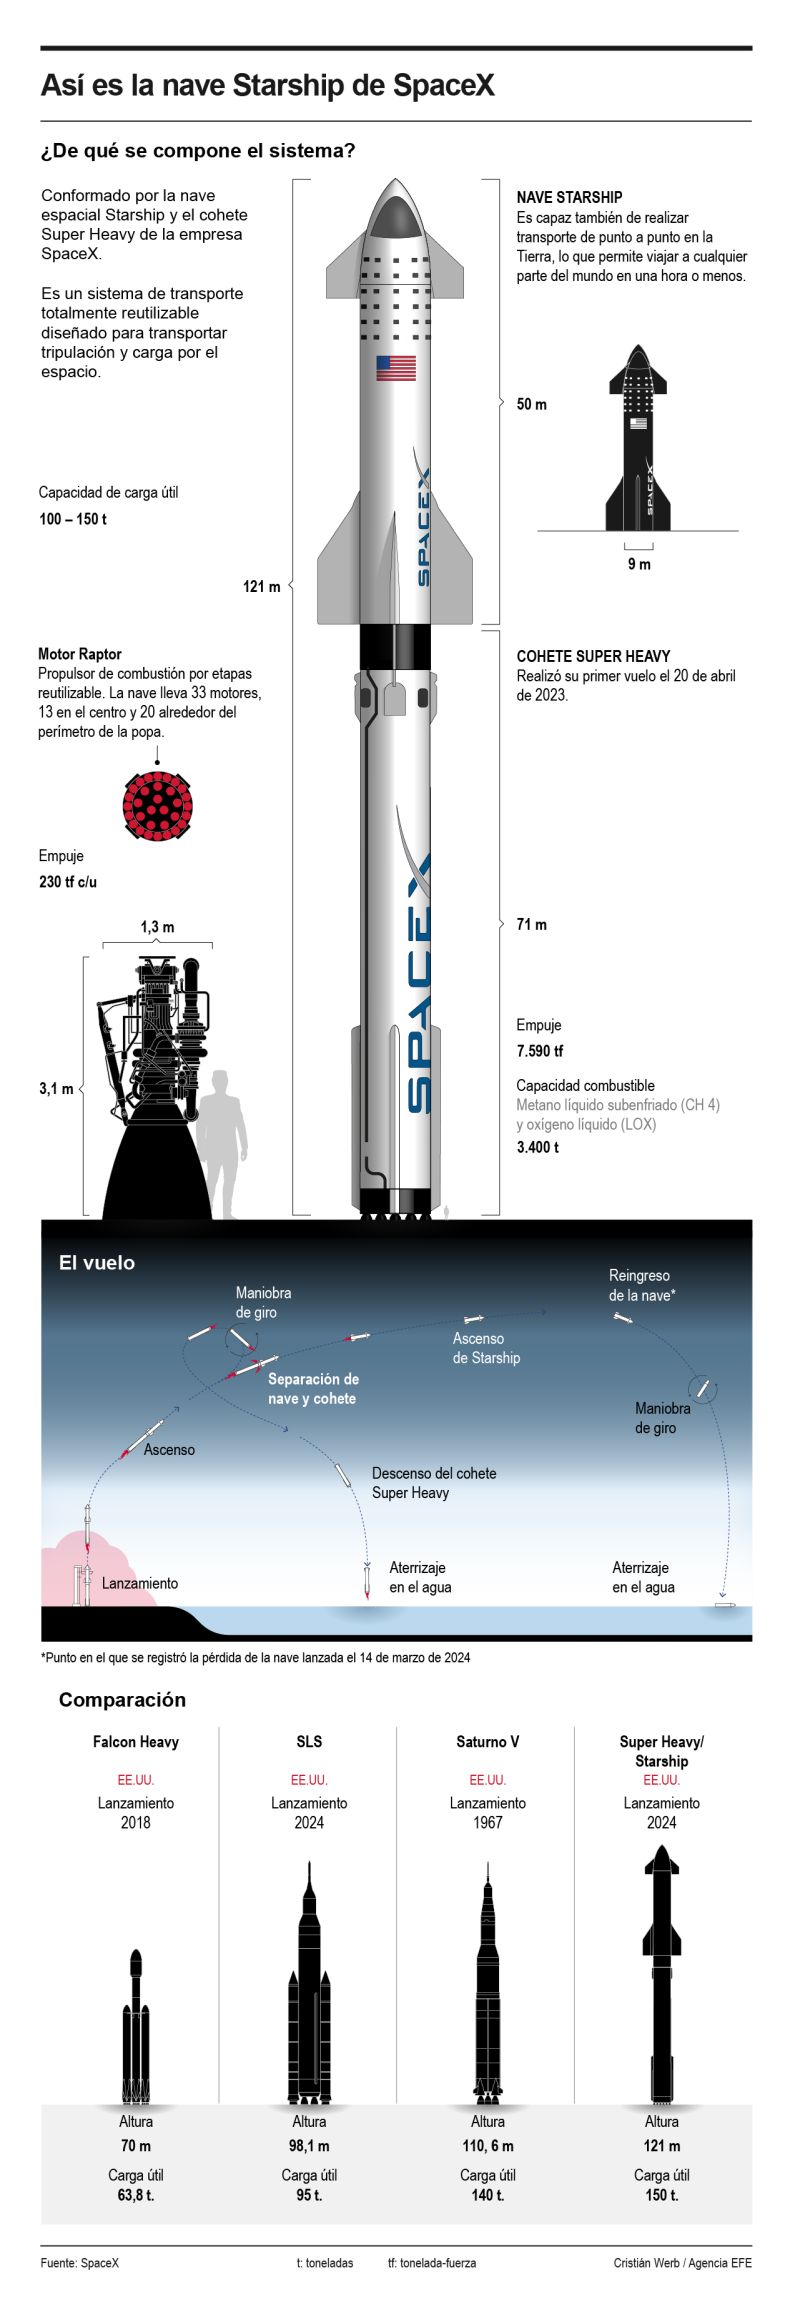 Así es la nave Starship de SpaceX 01 160324